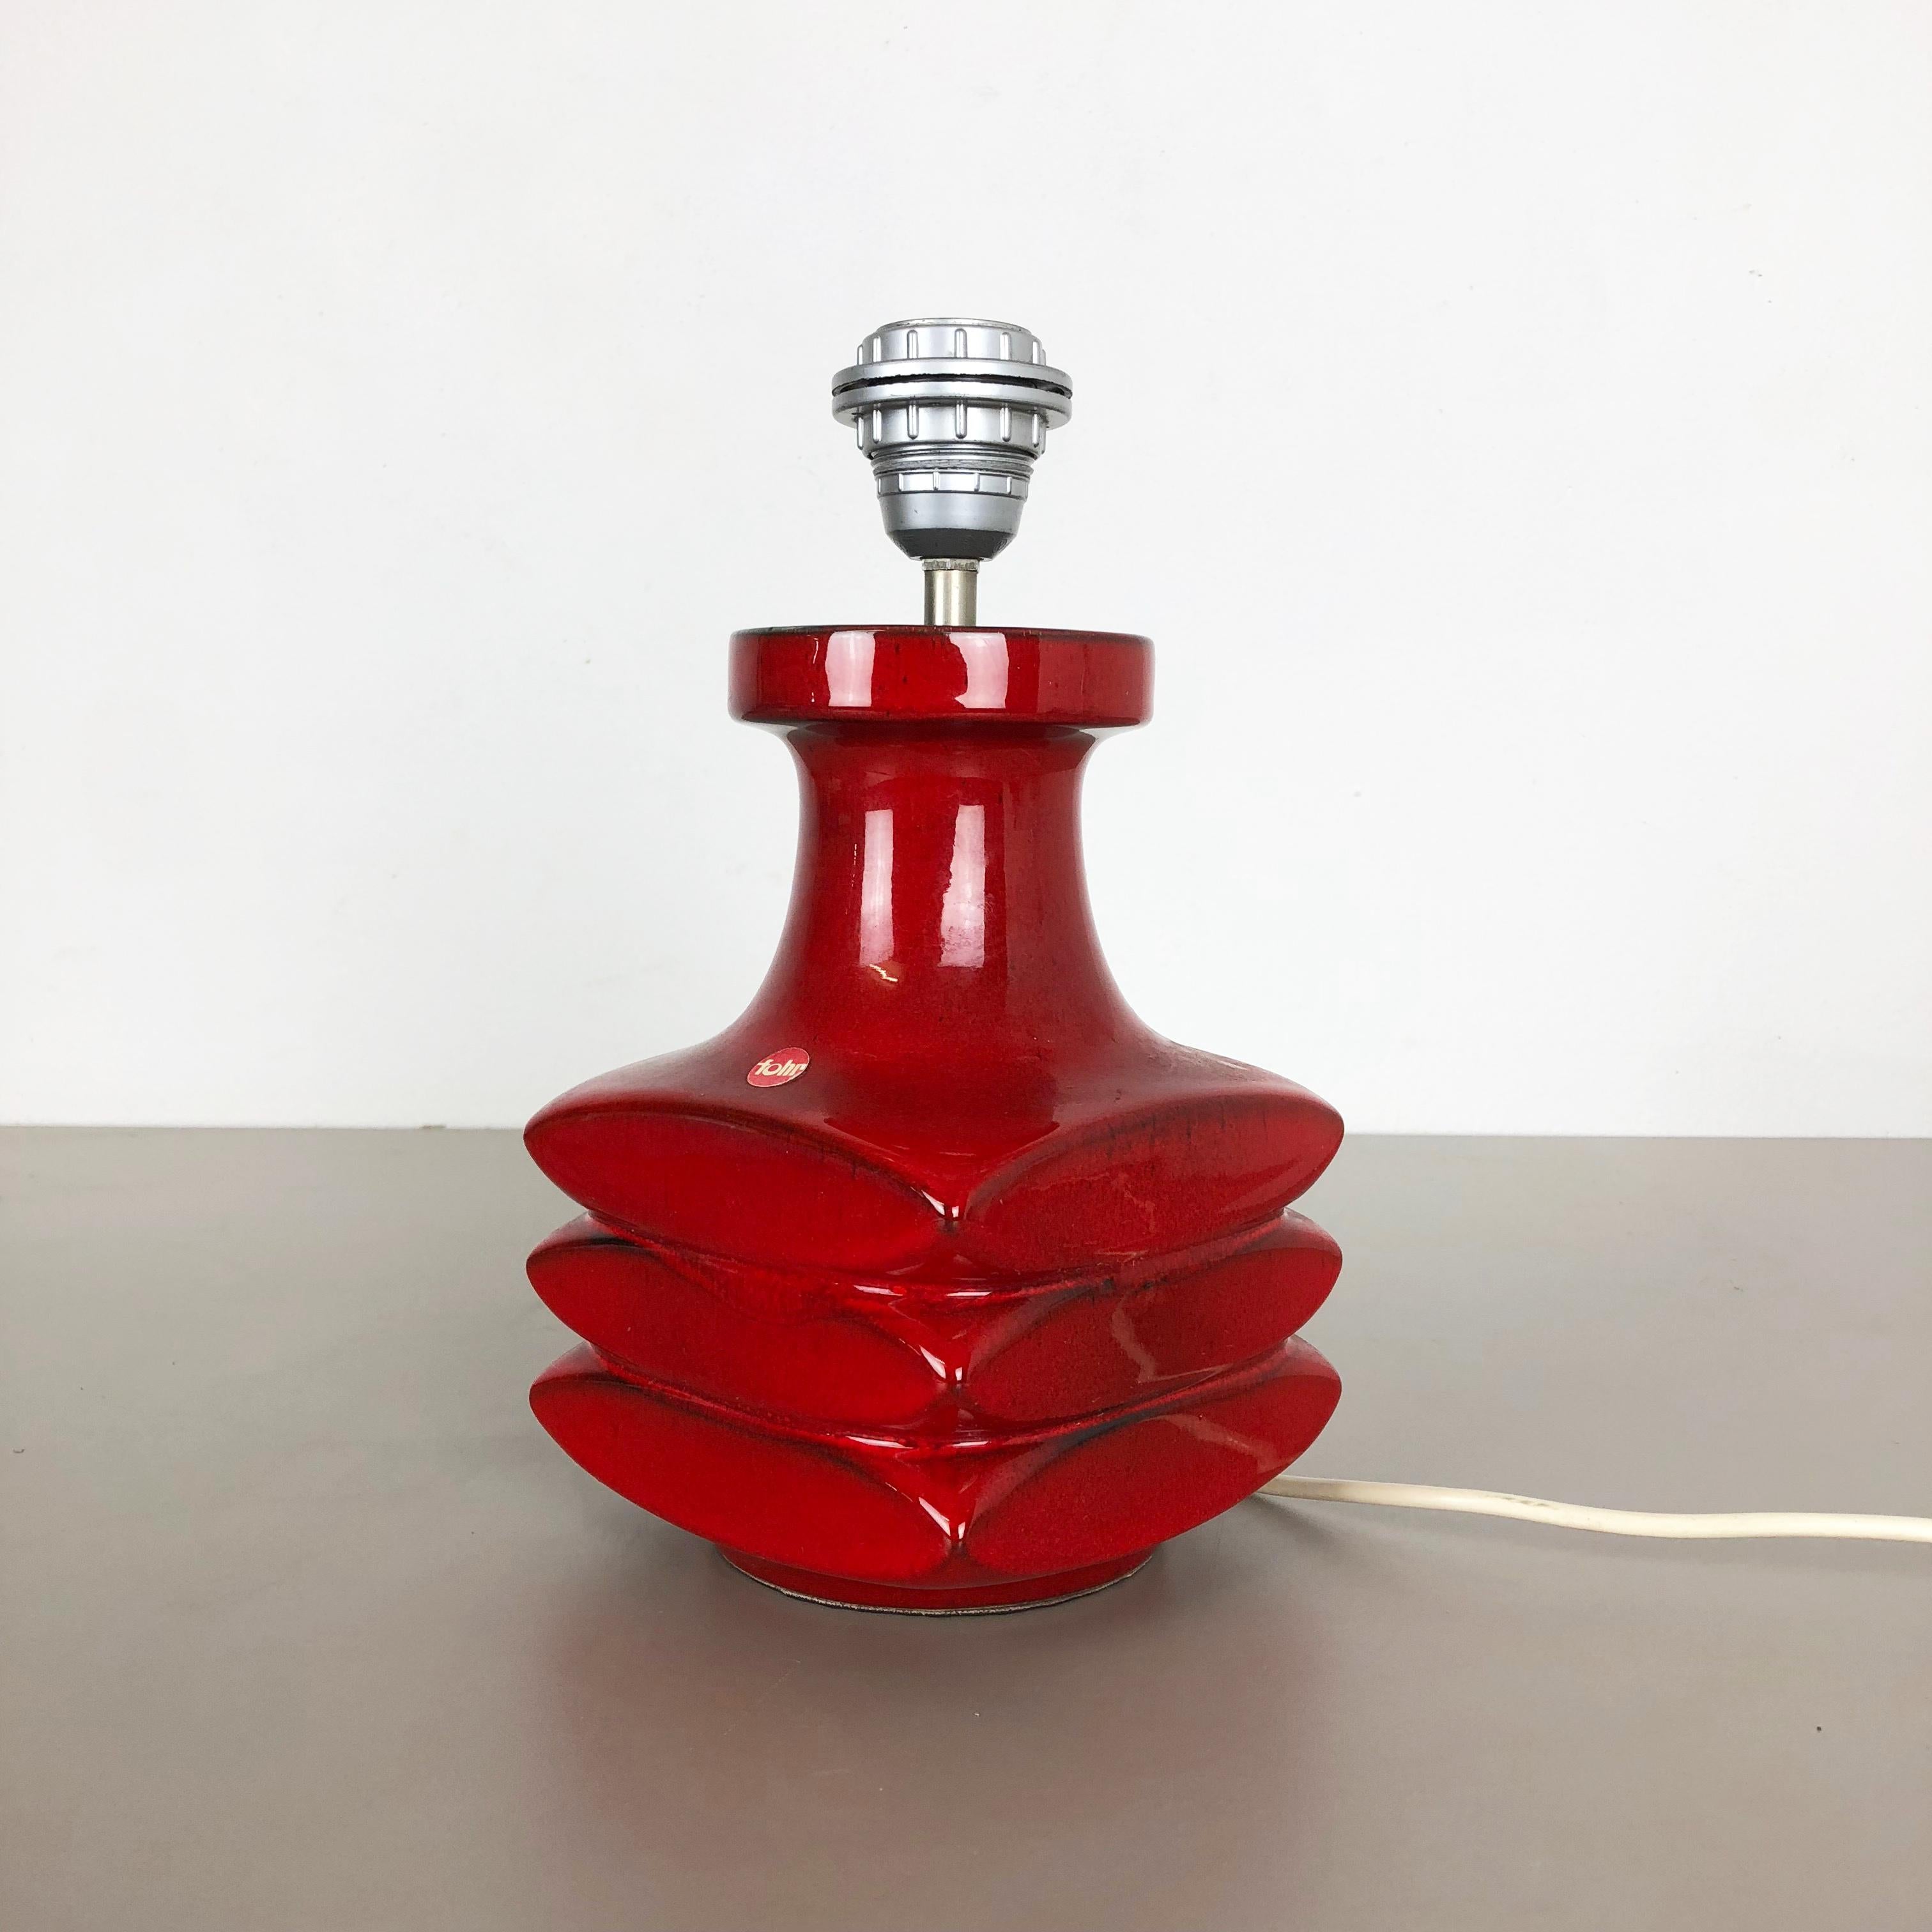 Artikel:

Keramische Tischleuchte


Produzent:

F, Deutschland


Designer:

Cari Zalloni




Jahrzehnt:

1970s





Dieser originale Vintage-Keramiksockel wurde in den 1970er Jahren von Cari Zalloni entworfen. Das rote